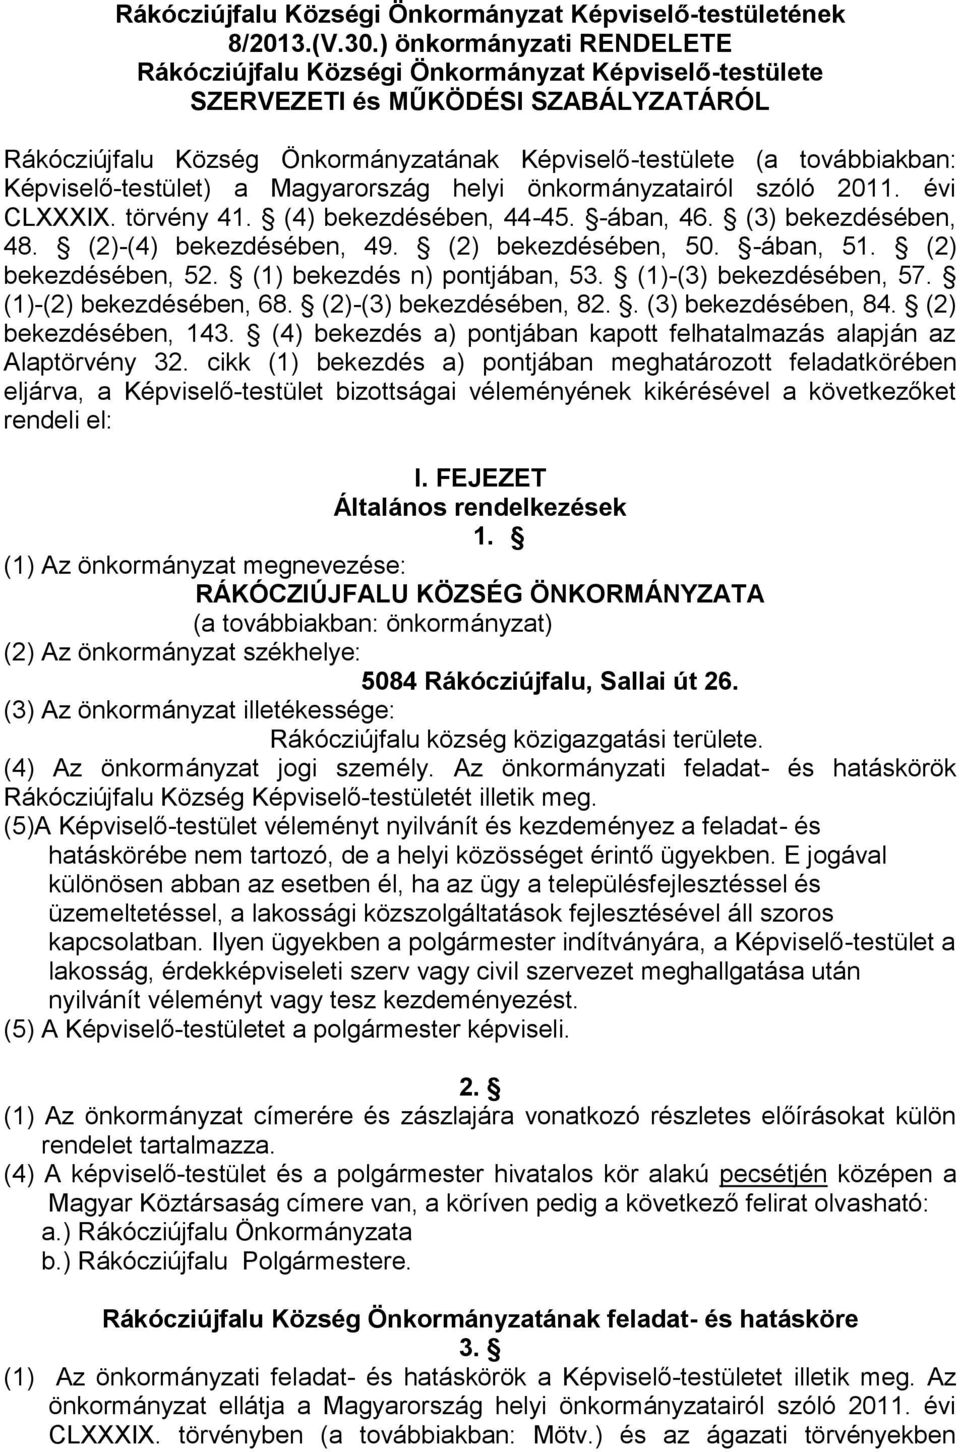 Képviselő-testület) a Magyarország helyi önkormányzatairól szóló 2011. évi CLXXXIX. törvény 41. (4) bekezdésében, 44-45. -ában, 46. (3) bekezdésében, 48. (2)-(4) bekezdésében, 49.